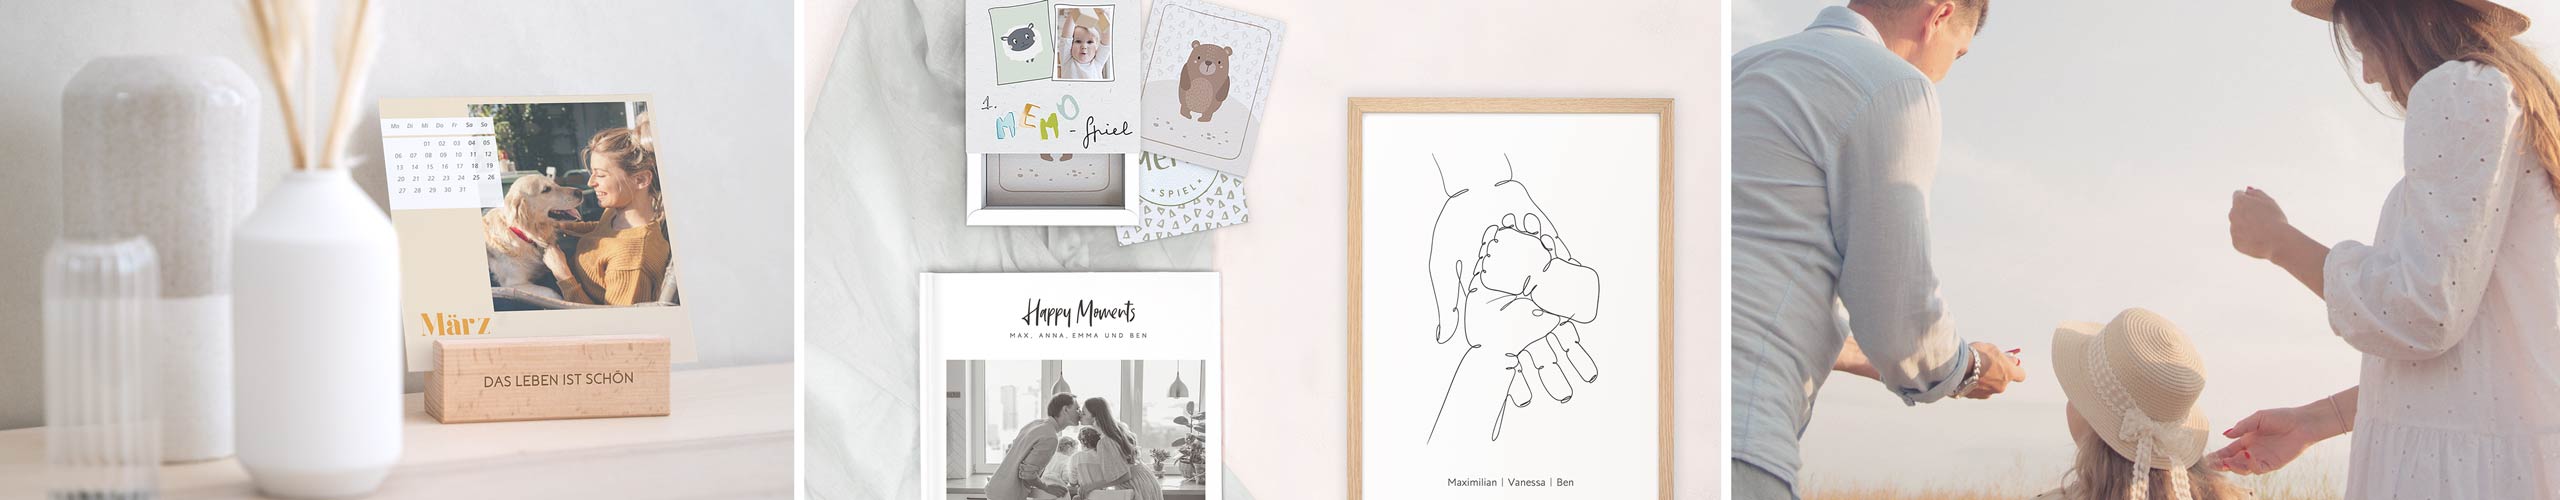 Personalisiertes Wandbild, Memo-Spiel und Fotobuch als Geschenkideen für die Familie